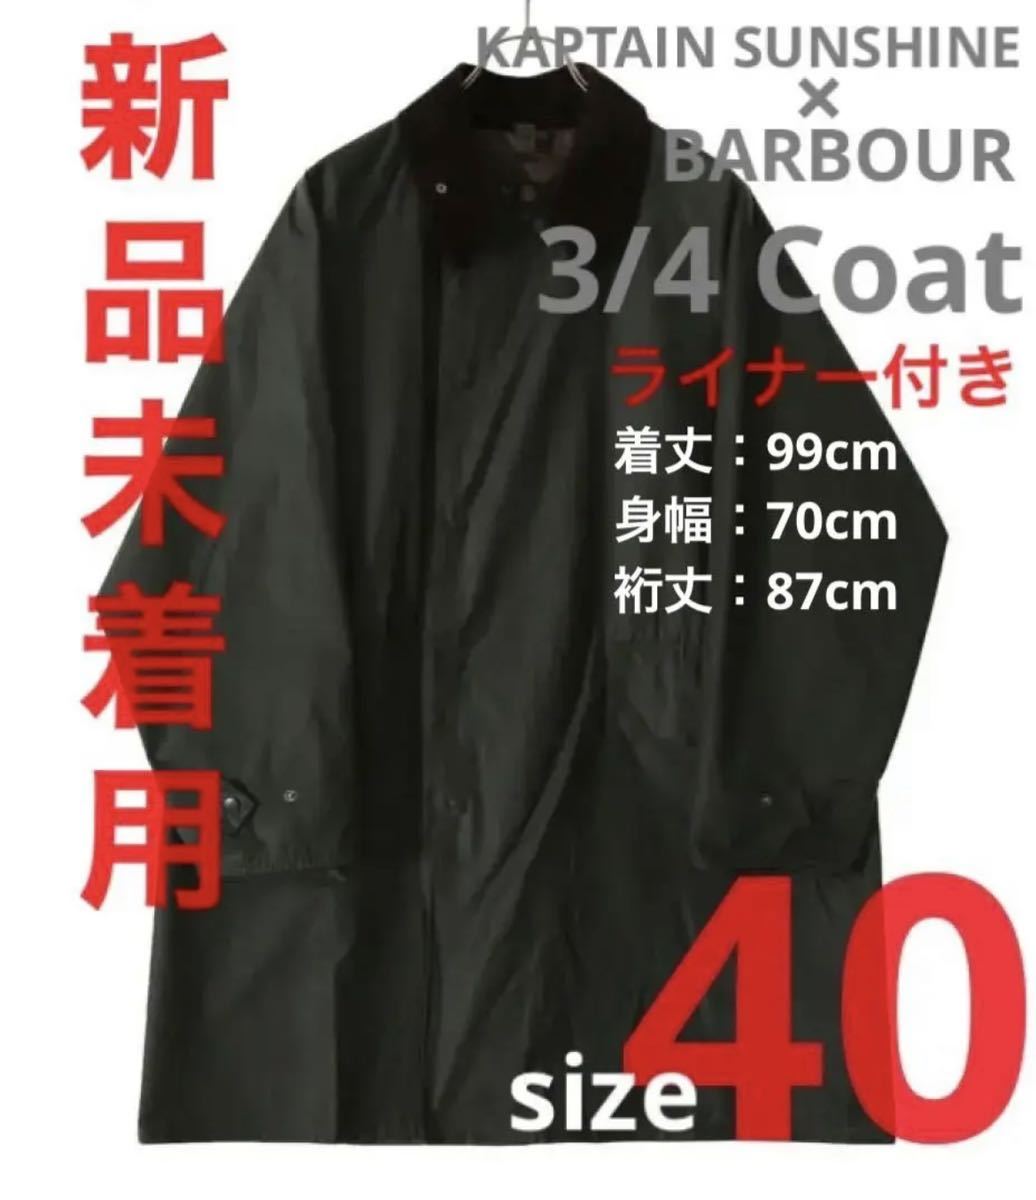 国内発送】 【新品未着用】KAPTAIN サイズ40 Coat 3/4 Barbour SUNSHINE 男性用